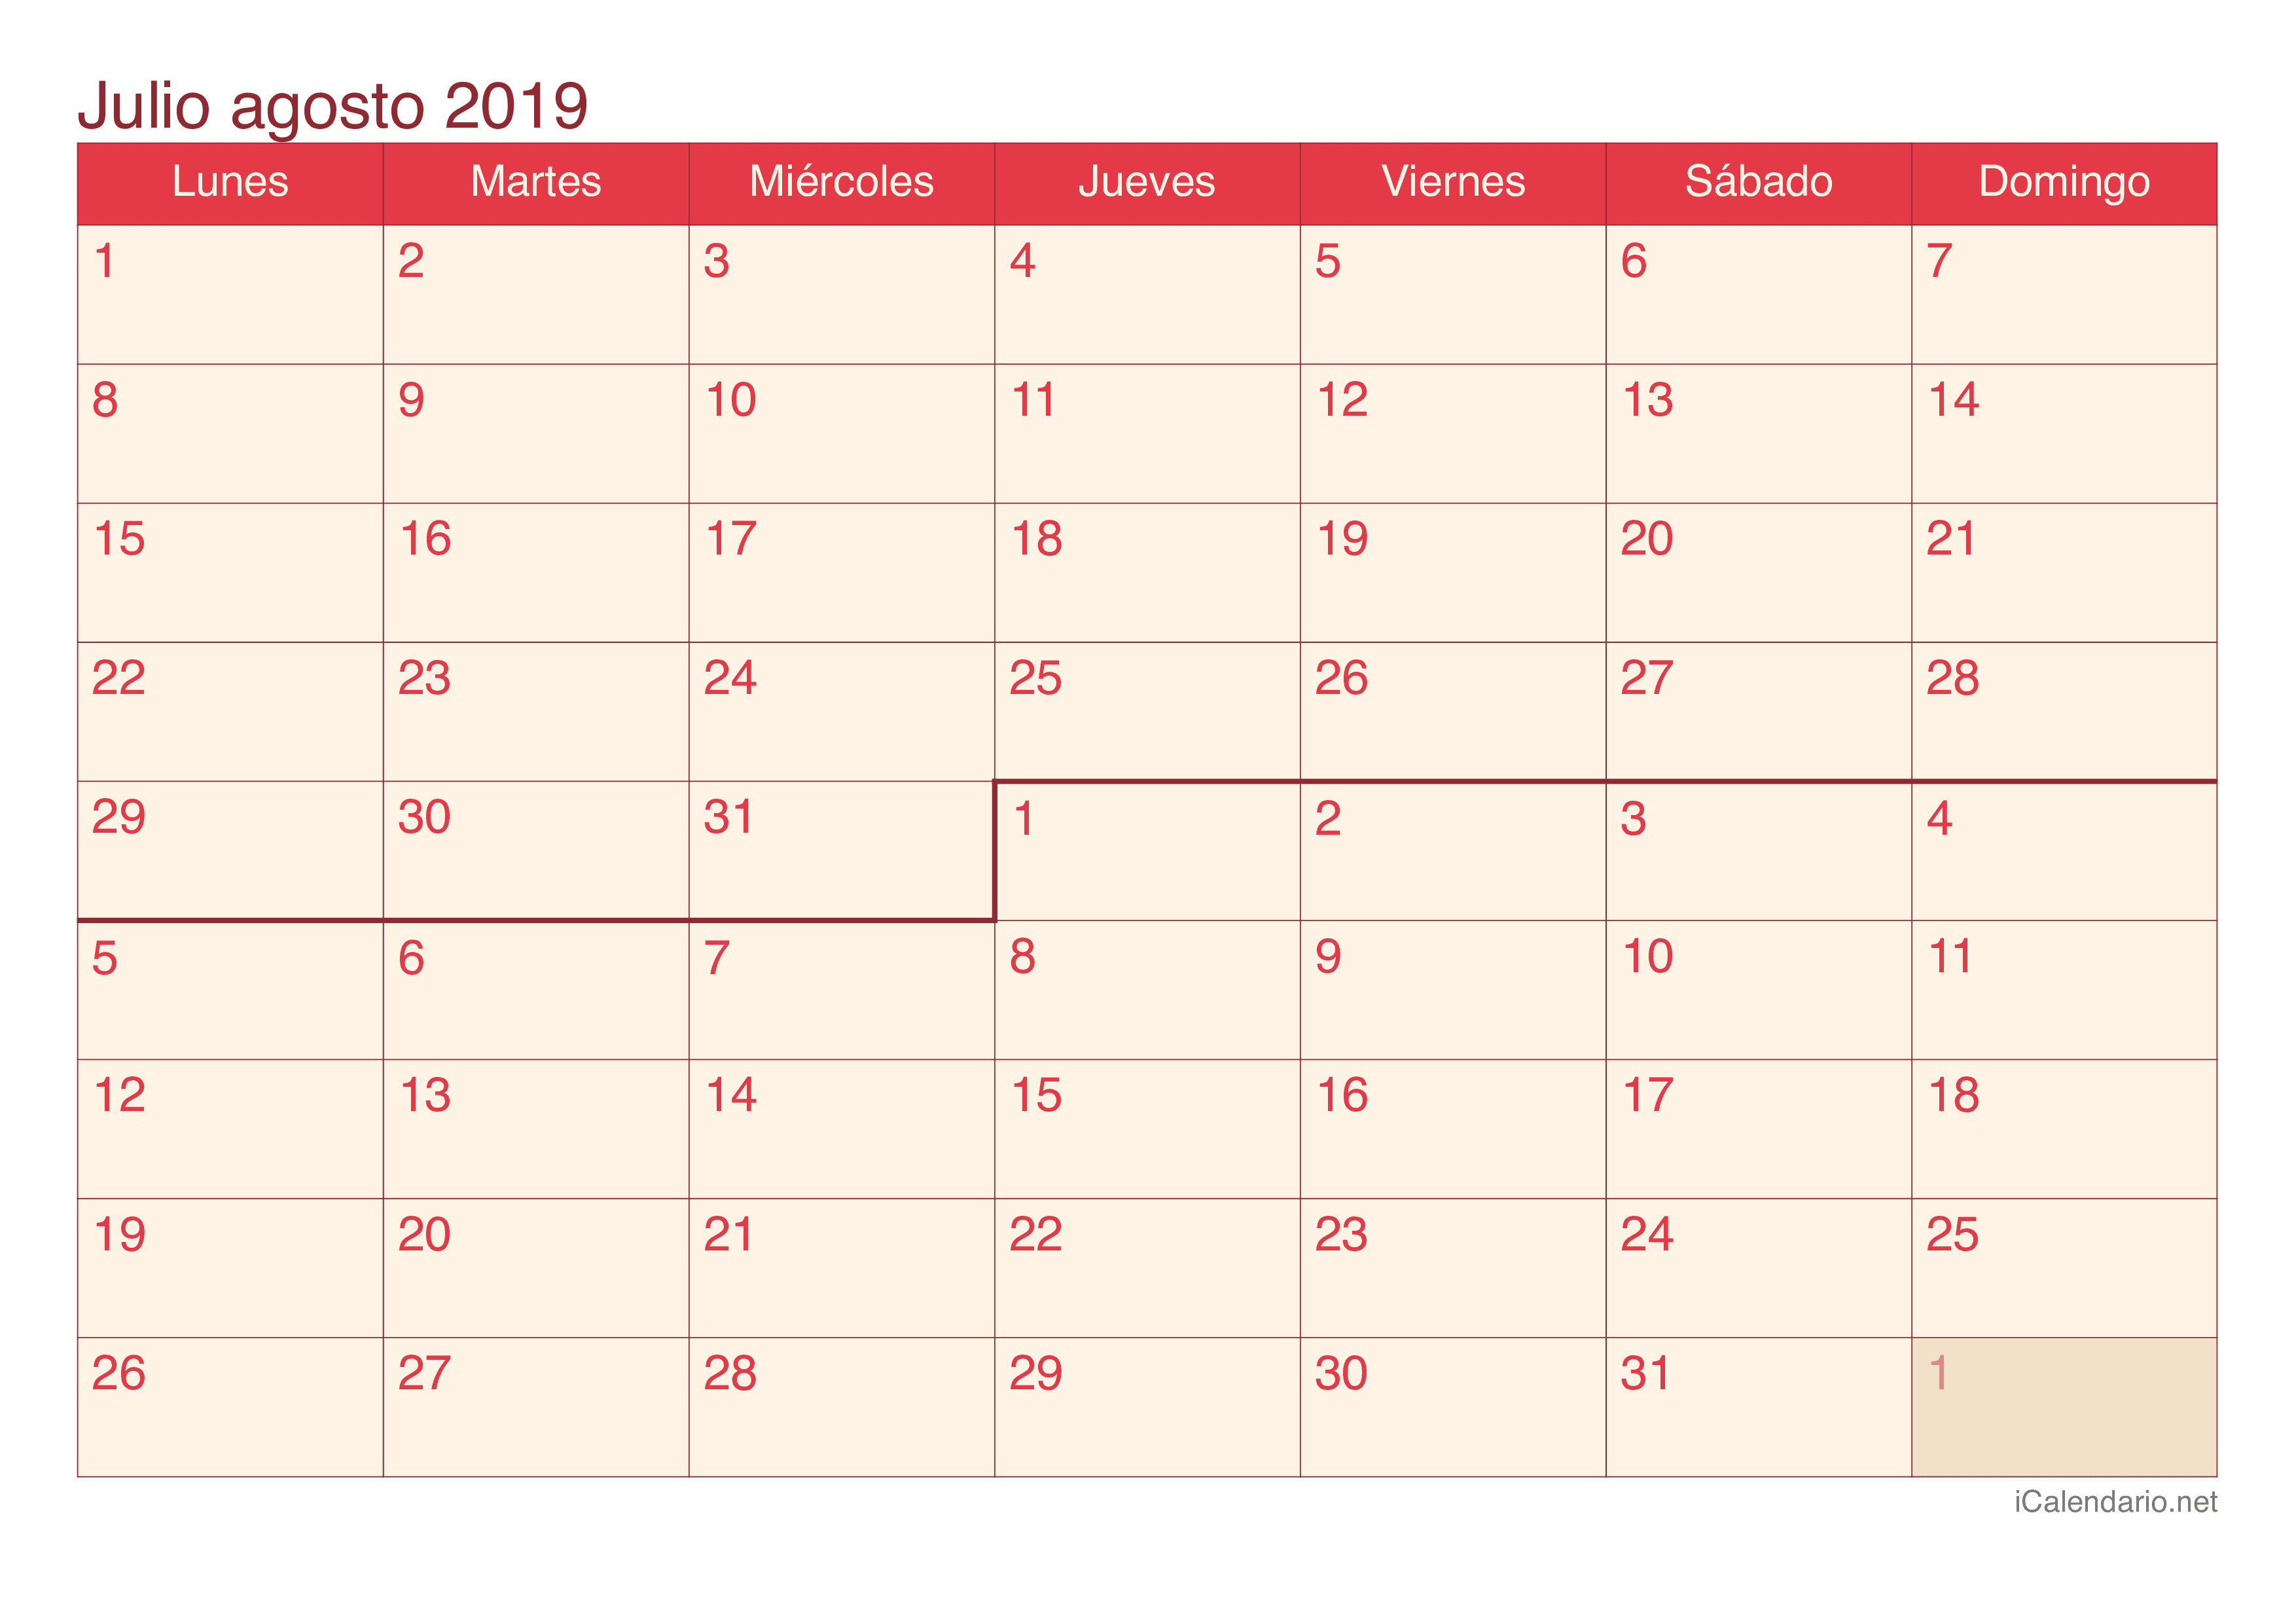 Calendario de julio agosto 2019 - Cherry